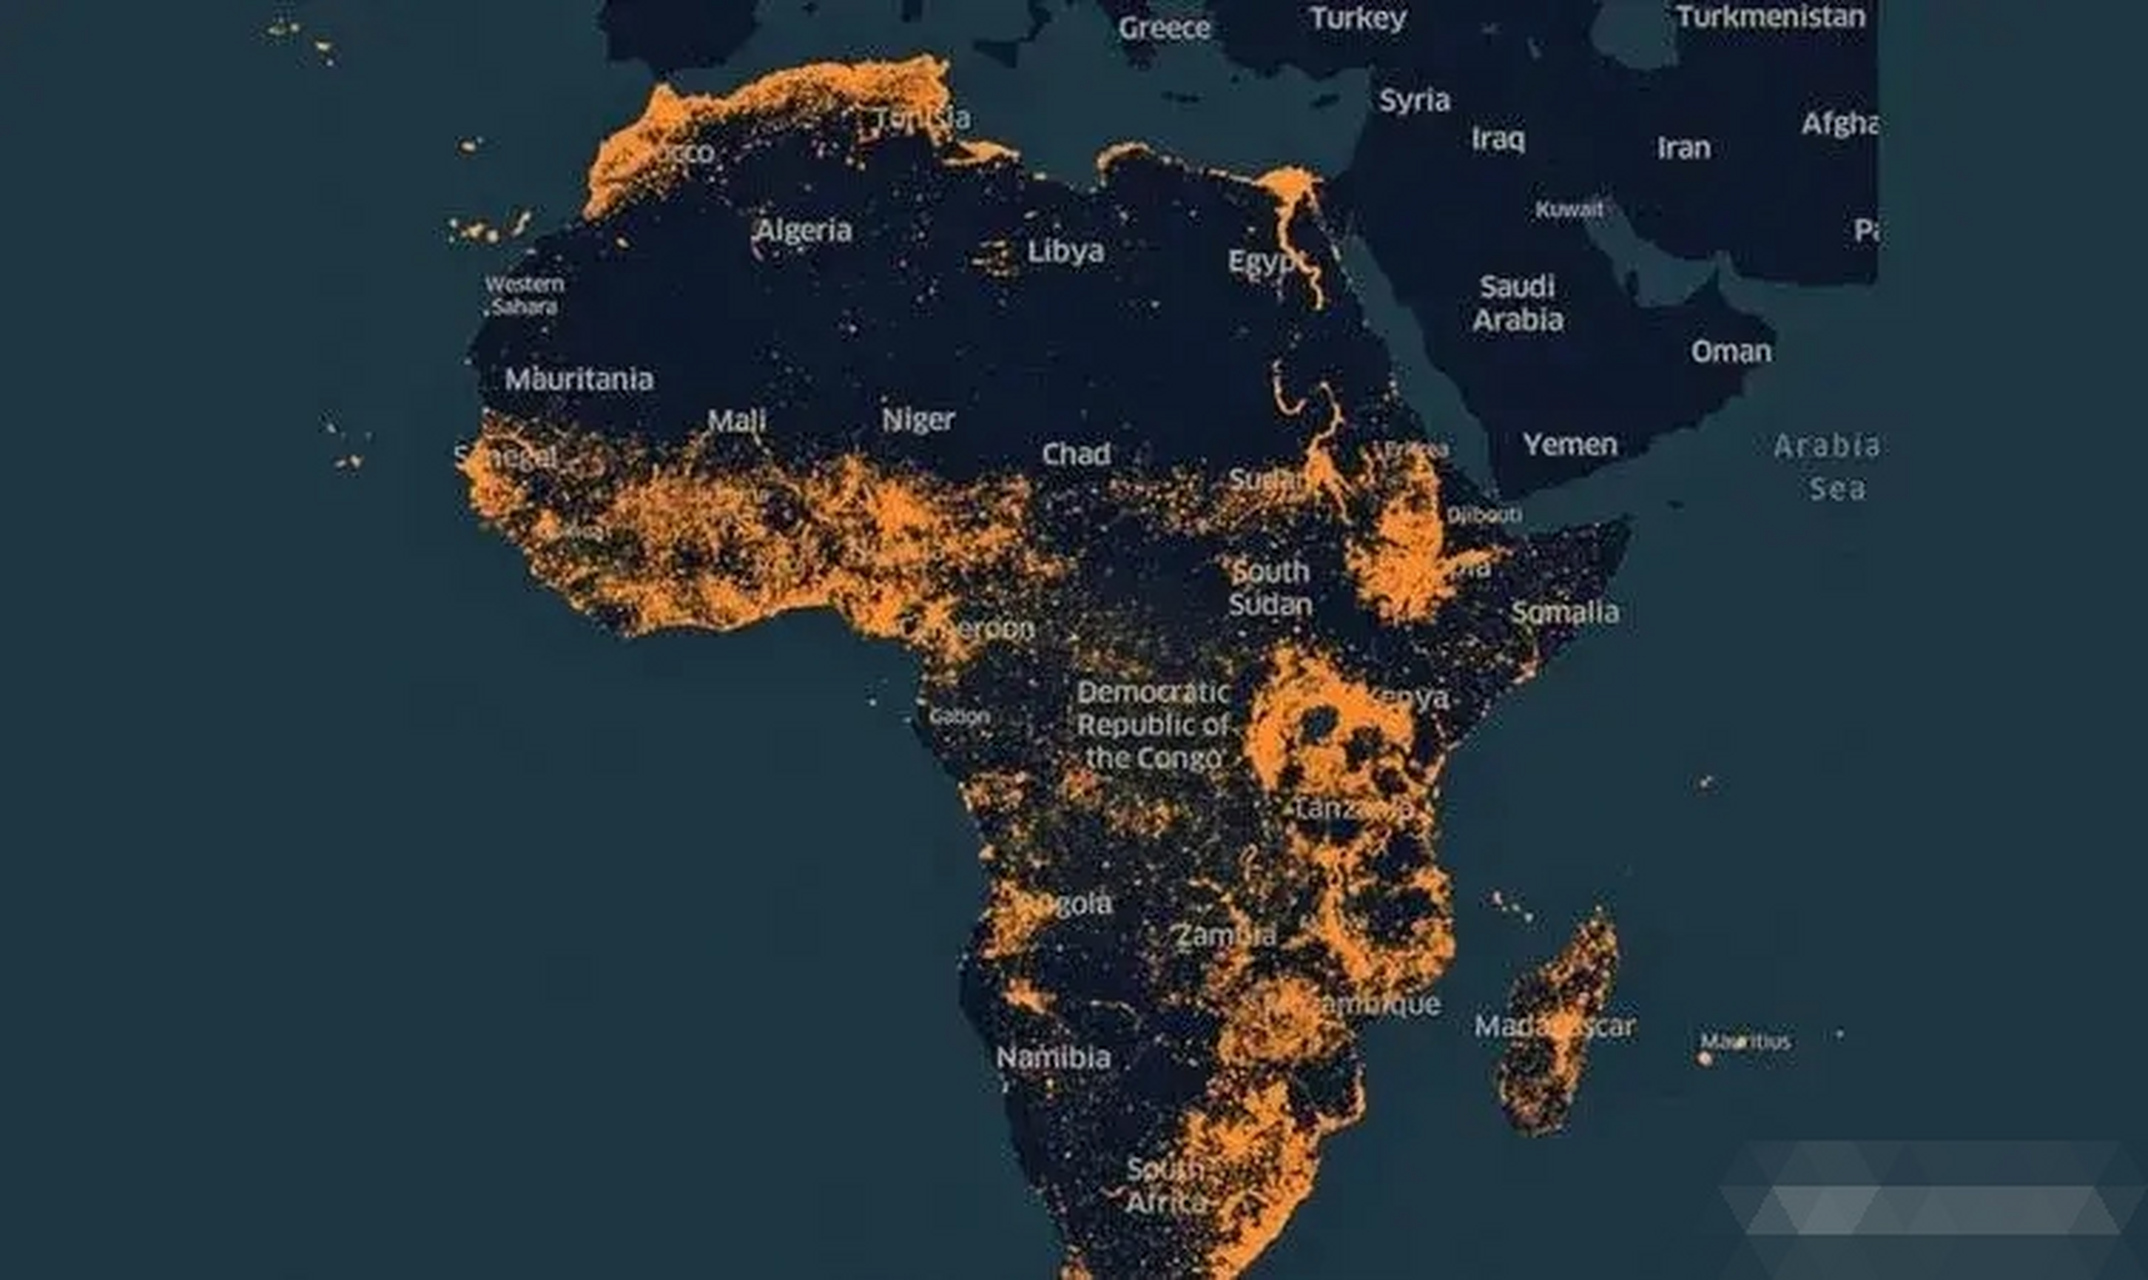 印象中非洲人口又多又能生,实际上他和亚洲人口大国比起来,简直不够看